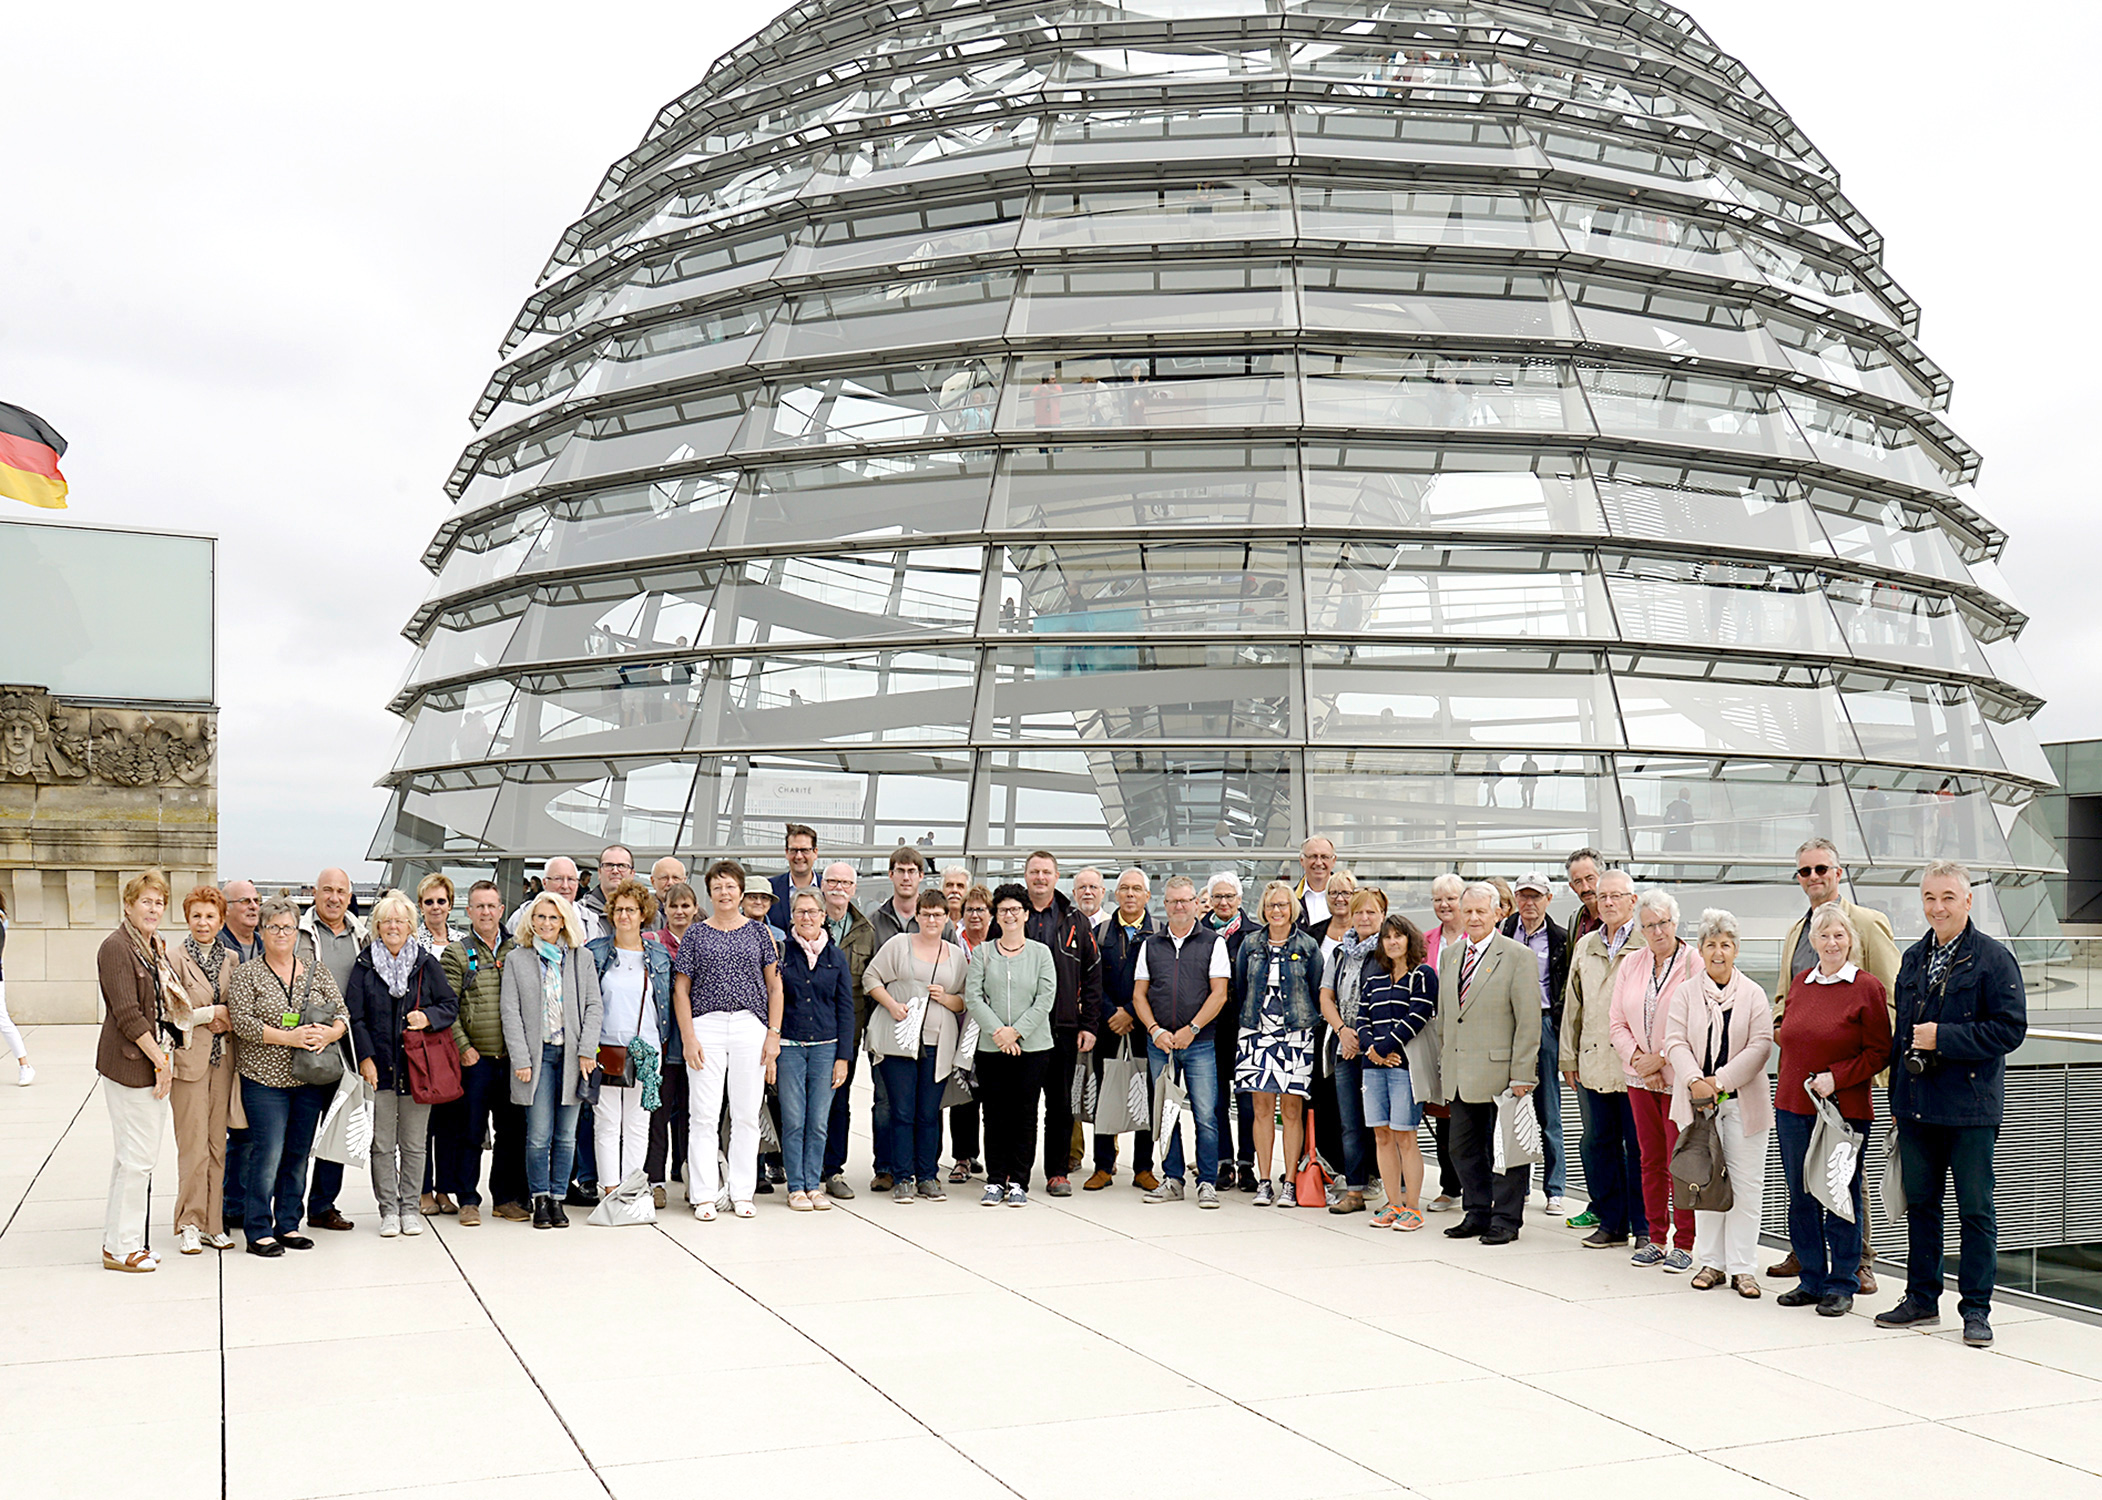 Gruppenfoto vor der Kuppel des Reichstagsgebäudes